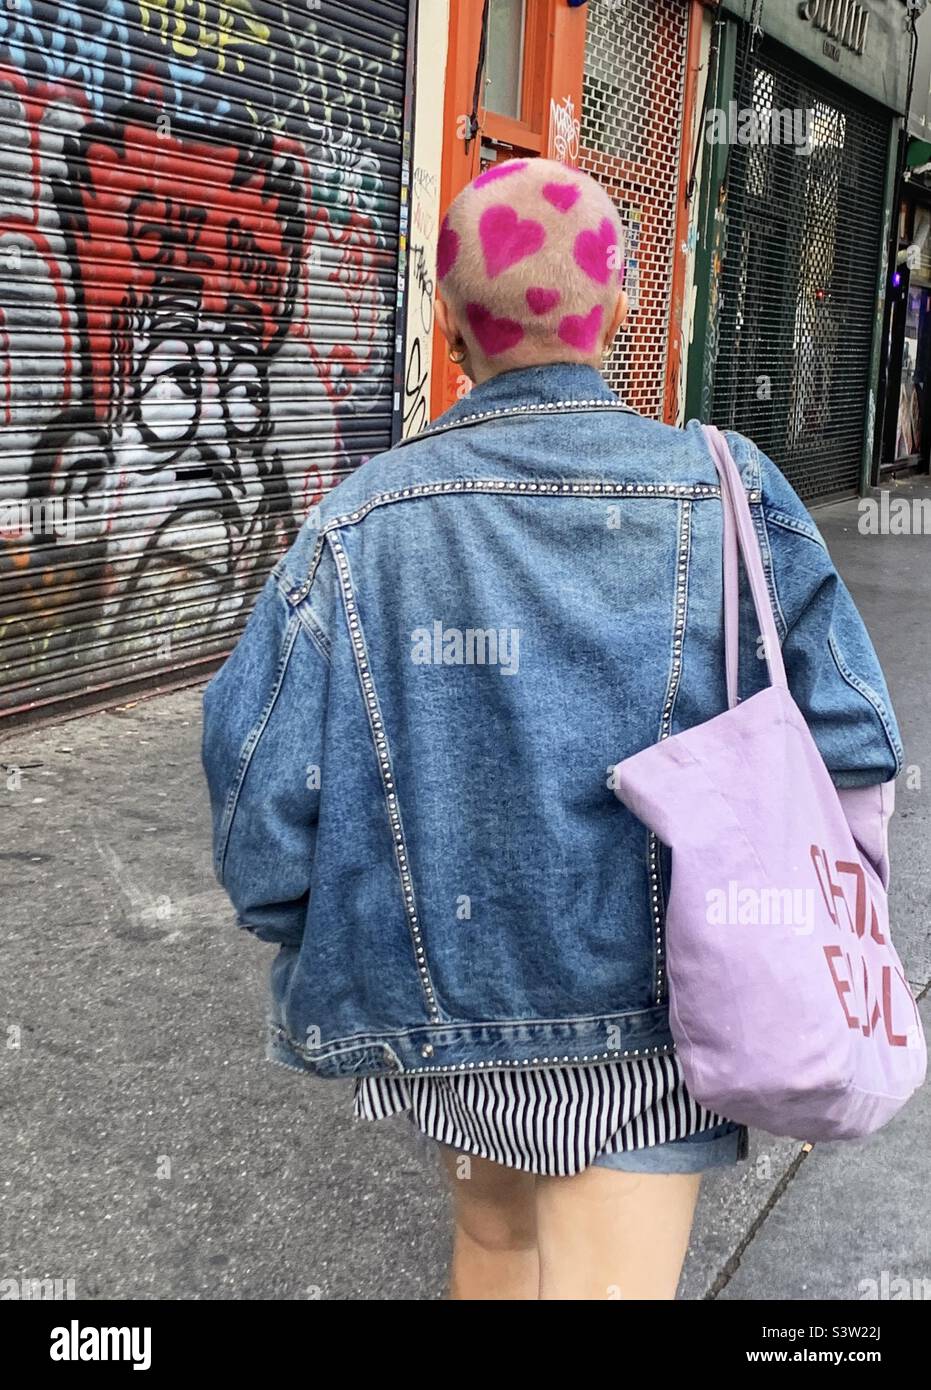 Femme avec coeur rose coiffure design marchant dans la rue Banque D'Images